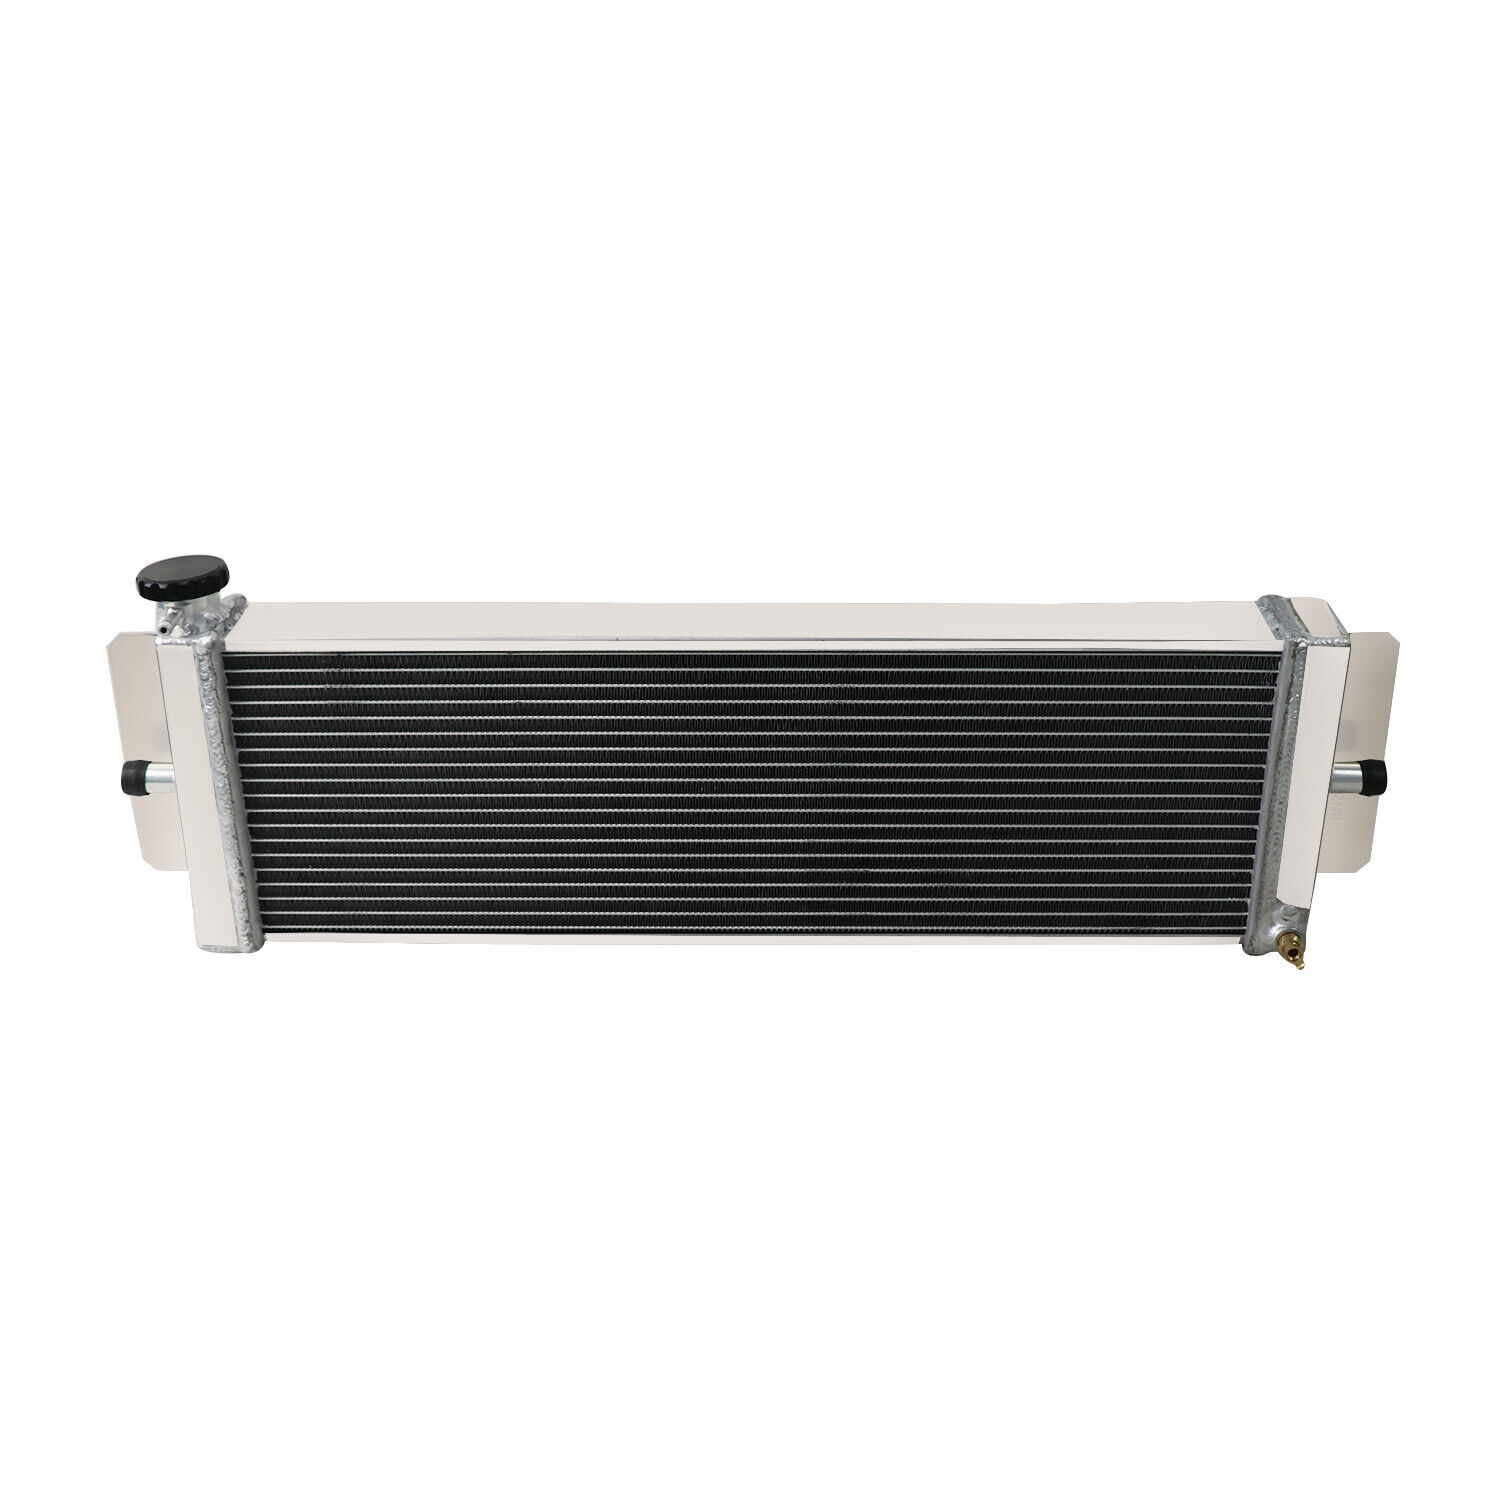 Air to Water Aluminum Intercooler Liquid Heat Exchanger Radiator